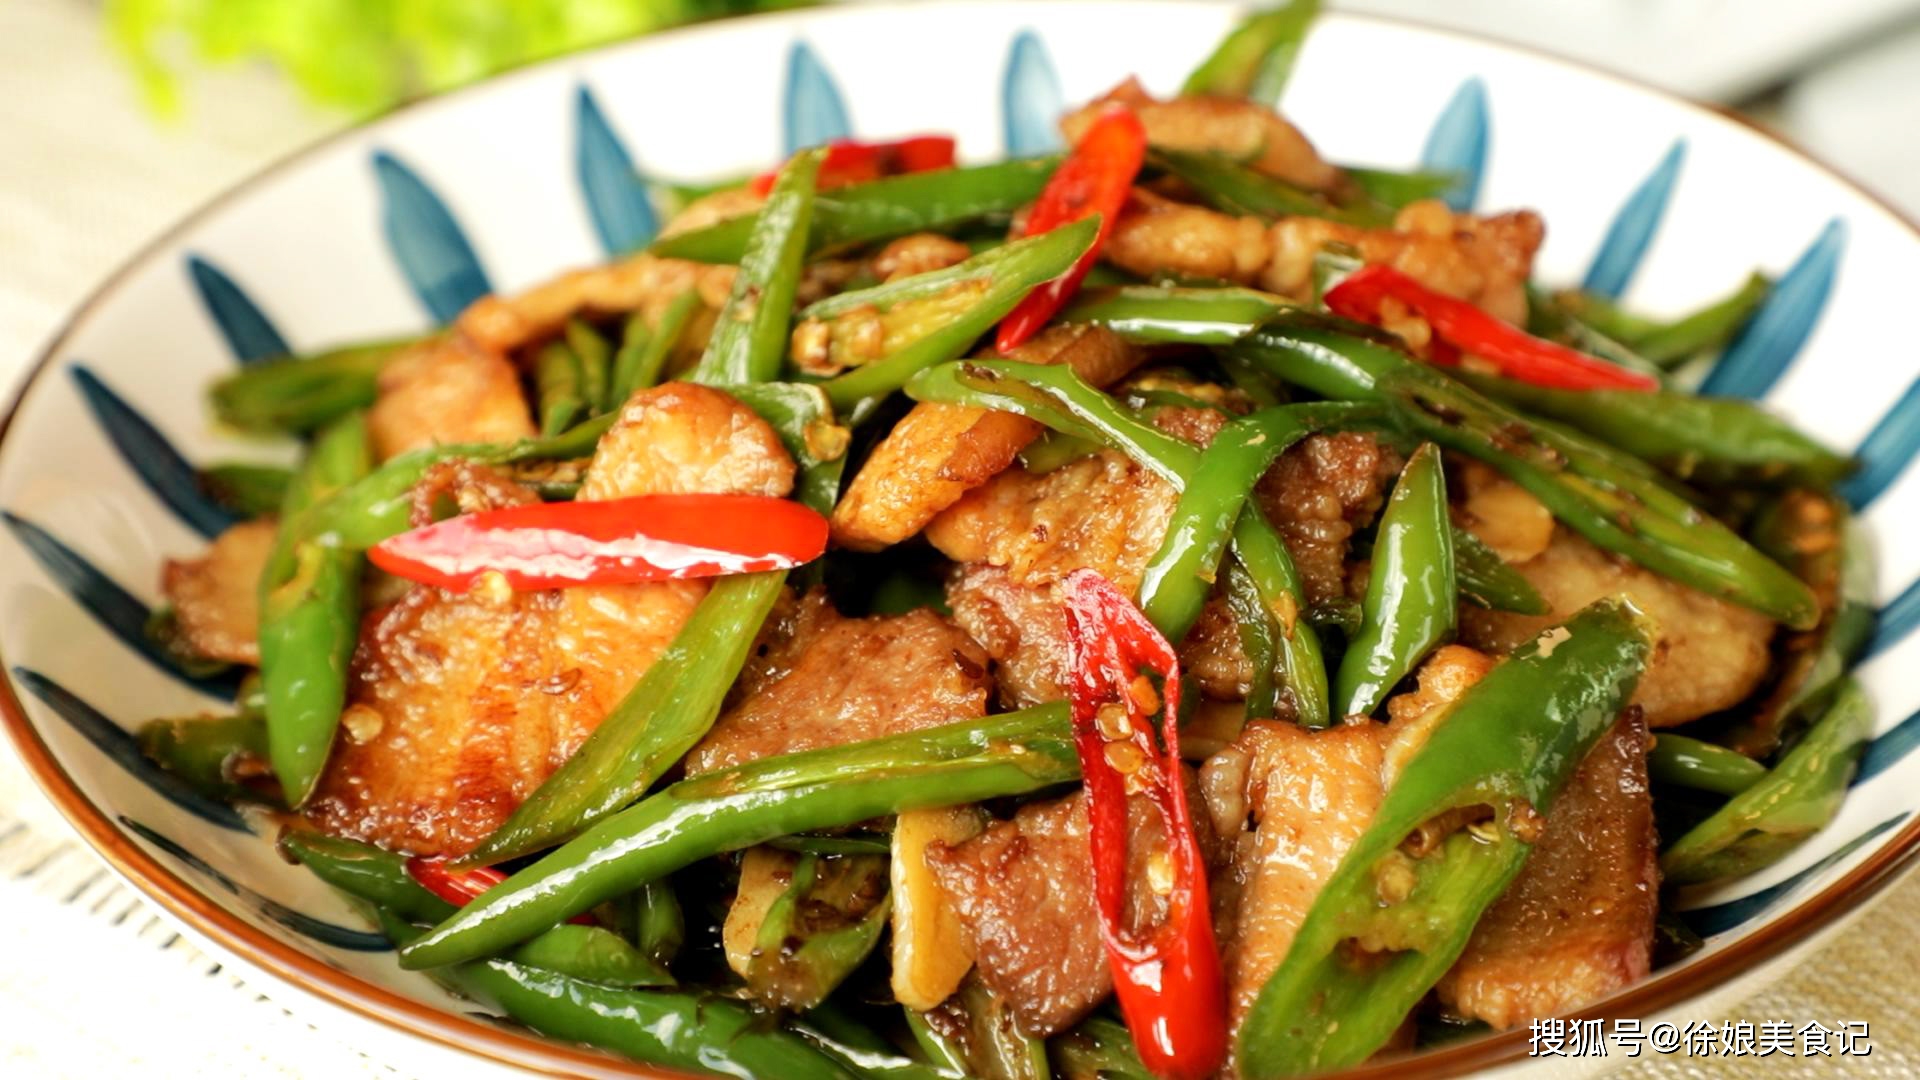 辣椒炒肉是湖南湘菜中最经典的一款家常土菜,几乎每家每户都会做都爱